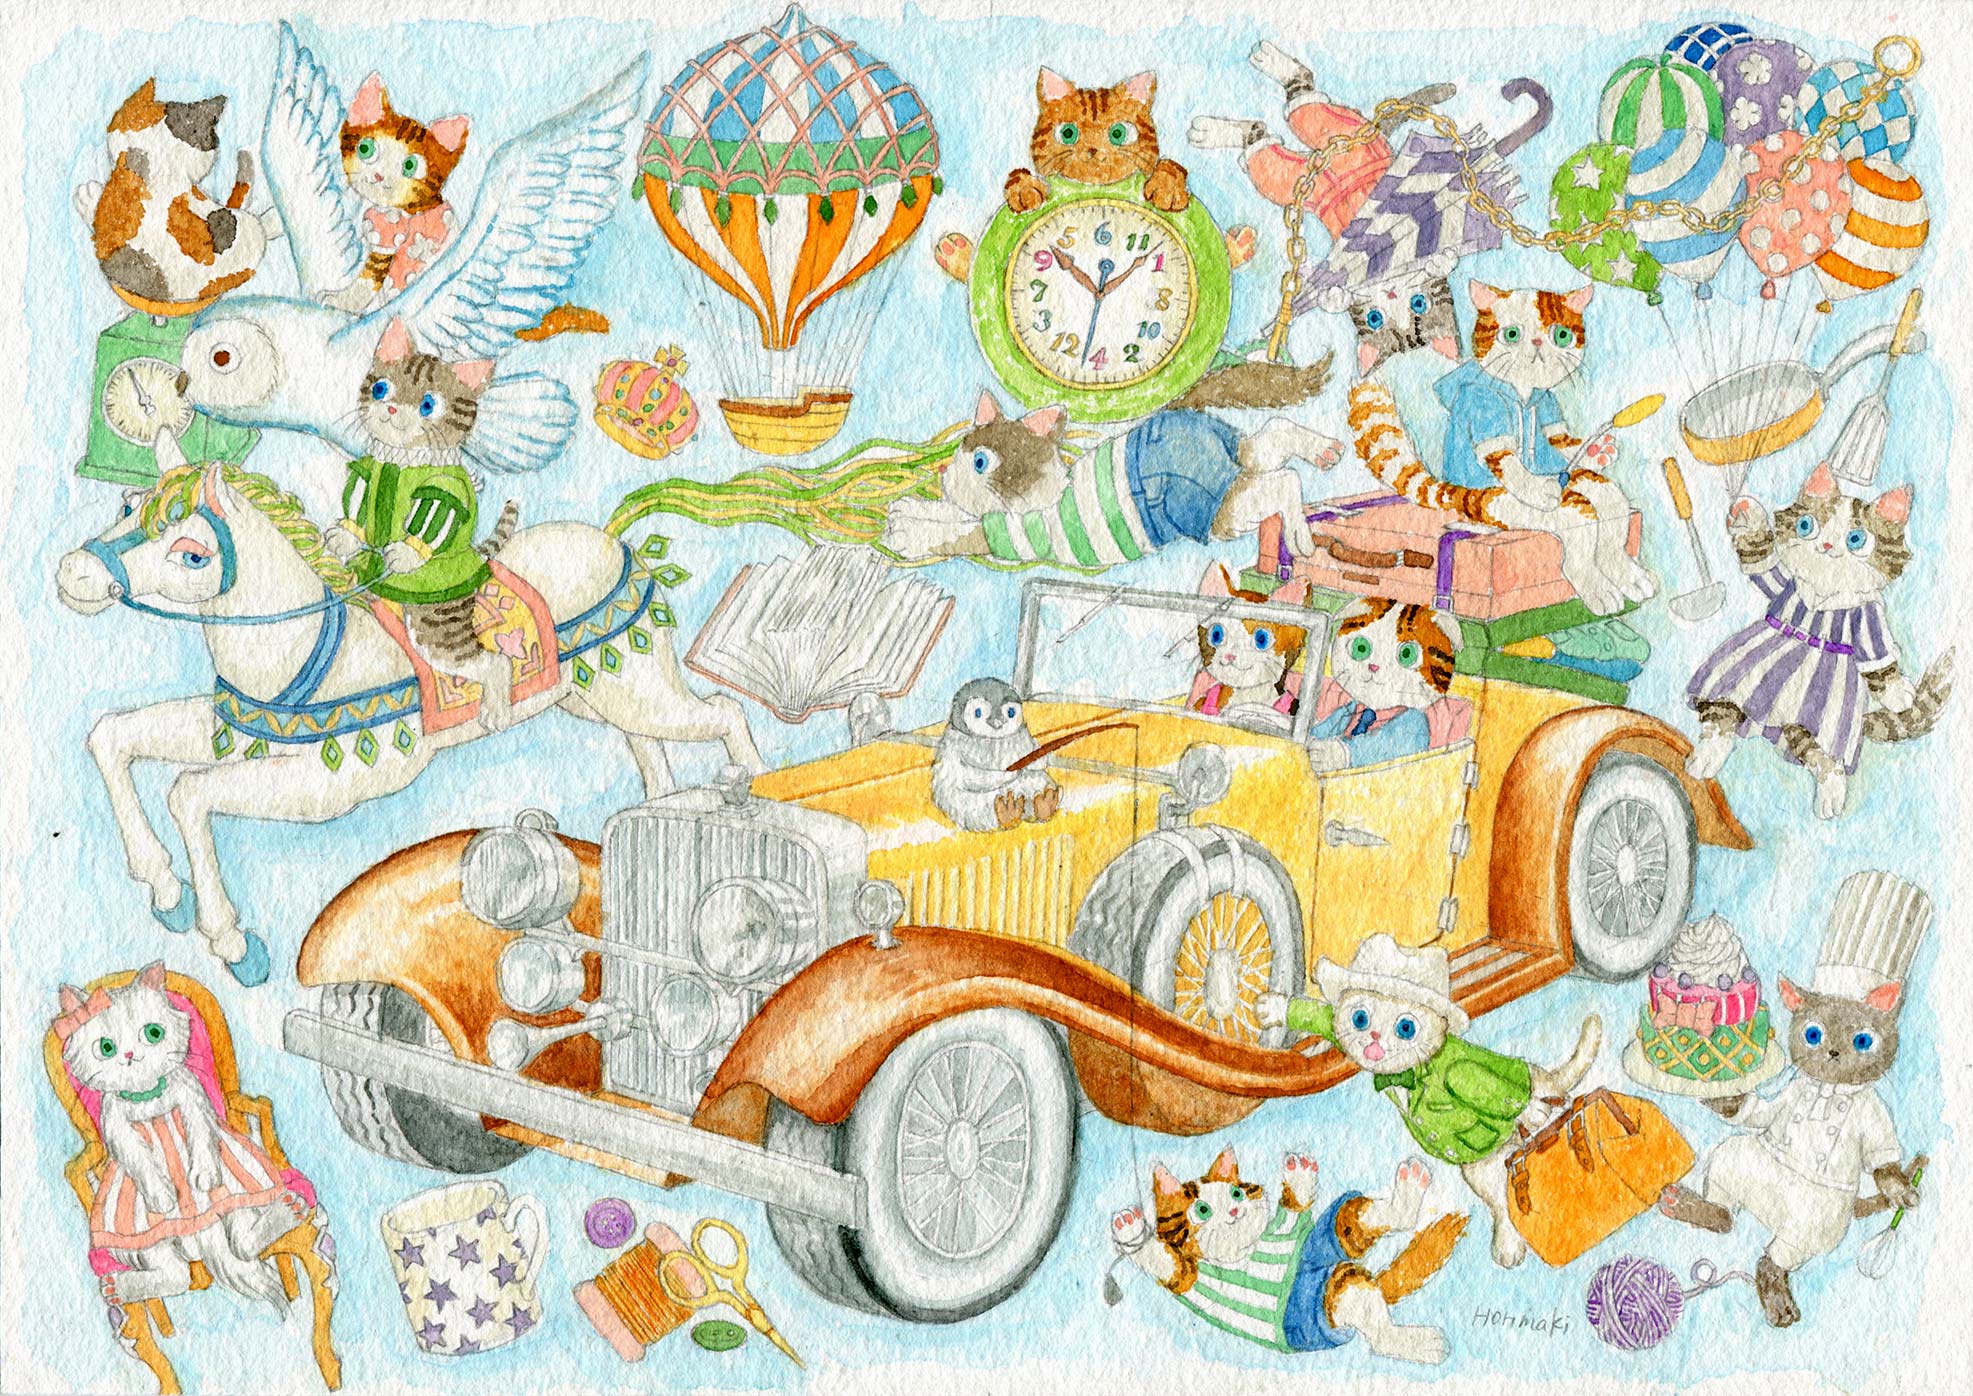 ホリマキ なんかへこんだ いつものことだけど ニャンコ 猫 猫のイラスト かわいいイラスト 手描き 水彩画 アート 絵 車 クラシックカー オープンカー コンバーチブル アナログ 水彩紙 動物 かわいい メルヘン ファンタジー